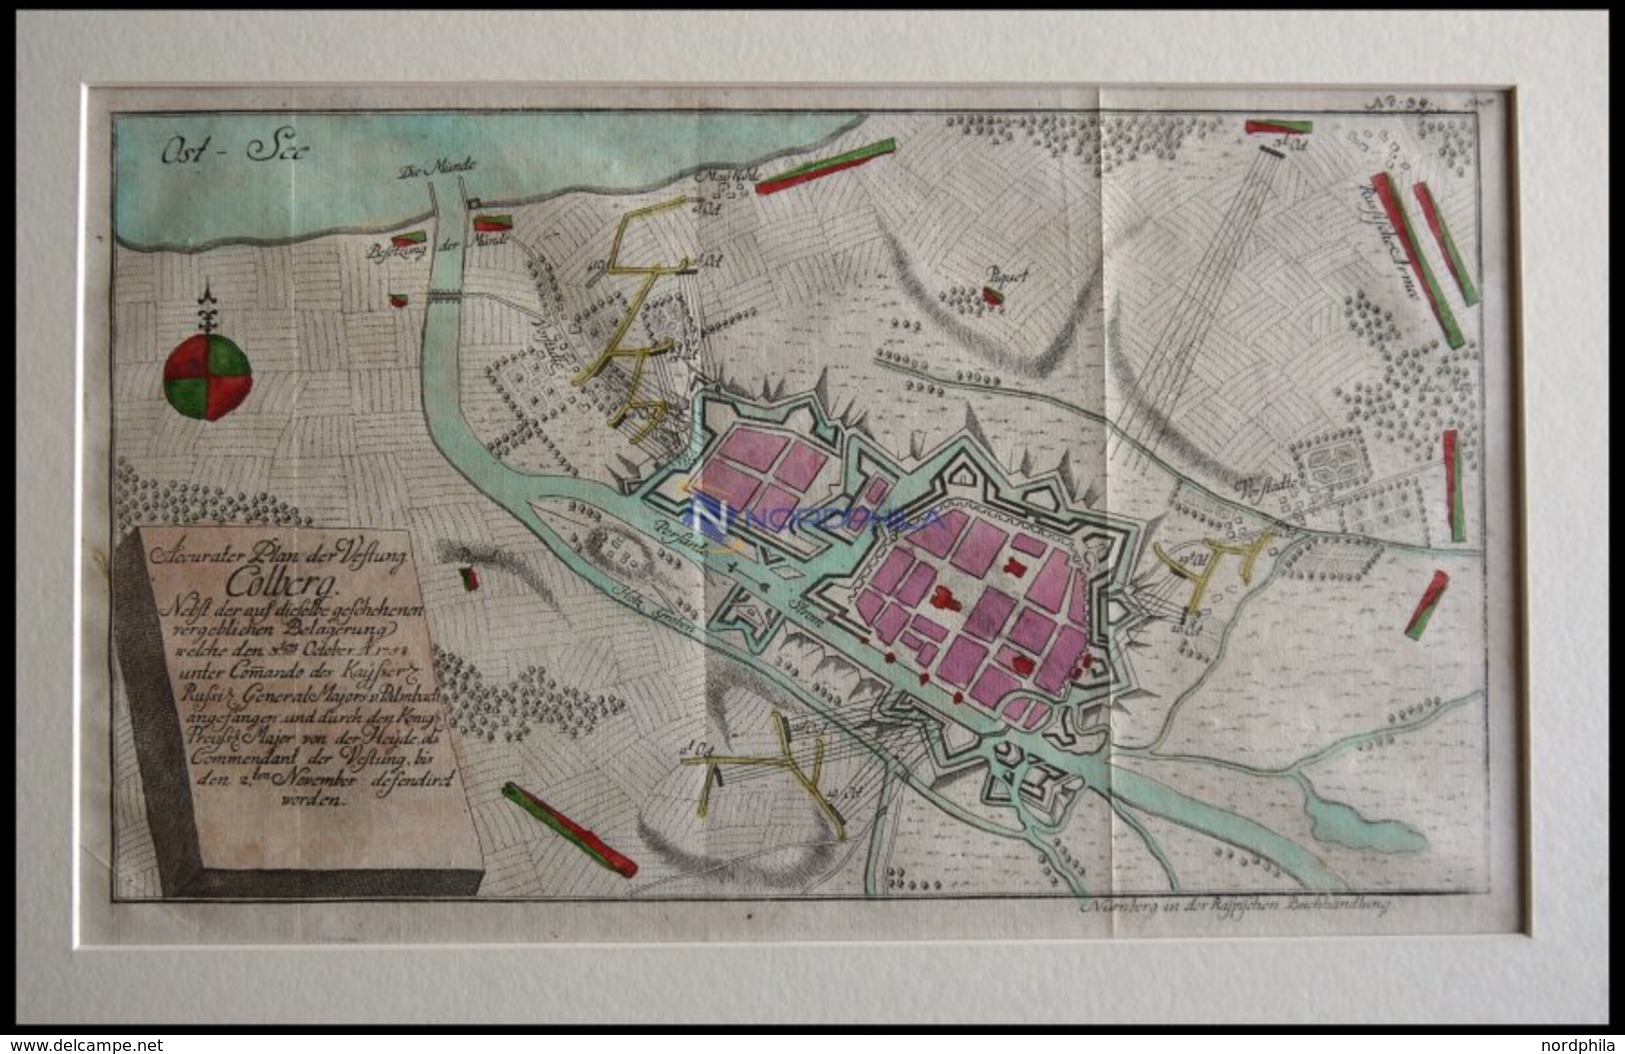 COLBERG, Festungsplan Der Belagerung Vom 3.10.1758, Altkolorierter Kupferstich Bei Raspische Buchhandlung 1760 - Lithographien